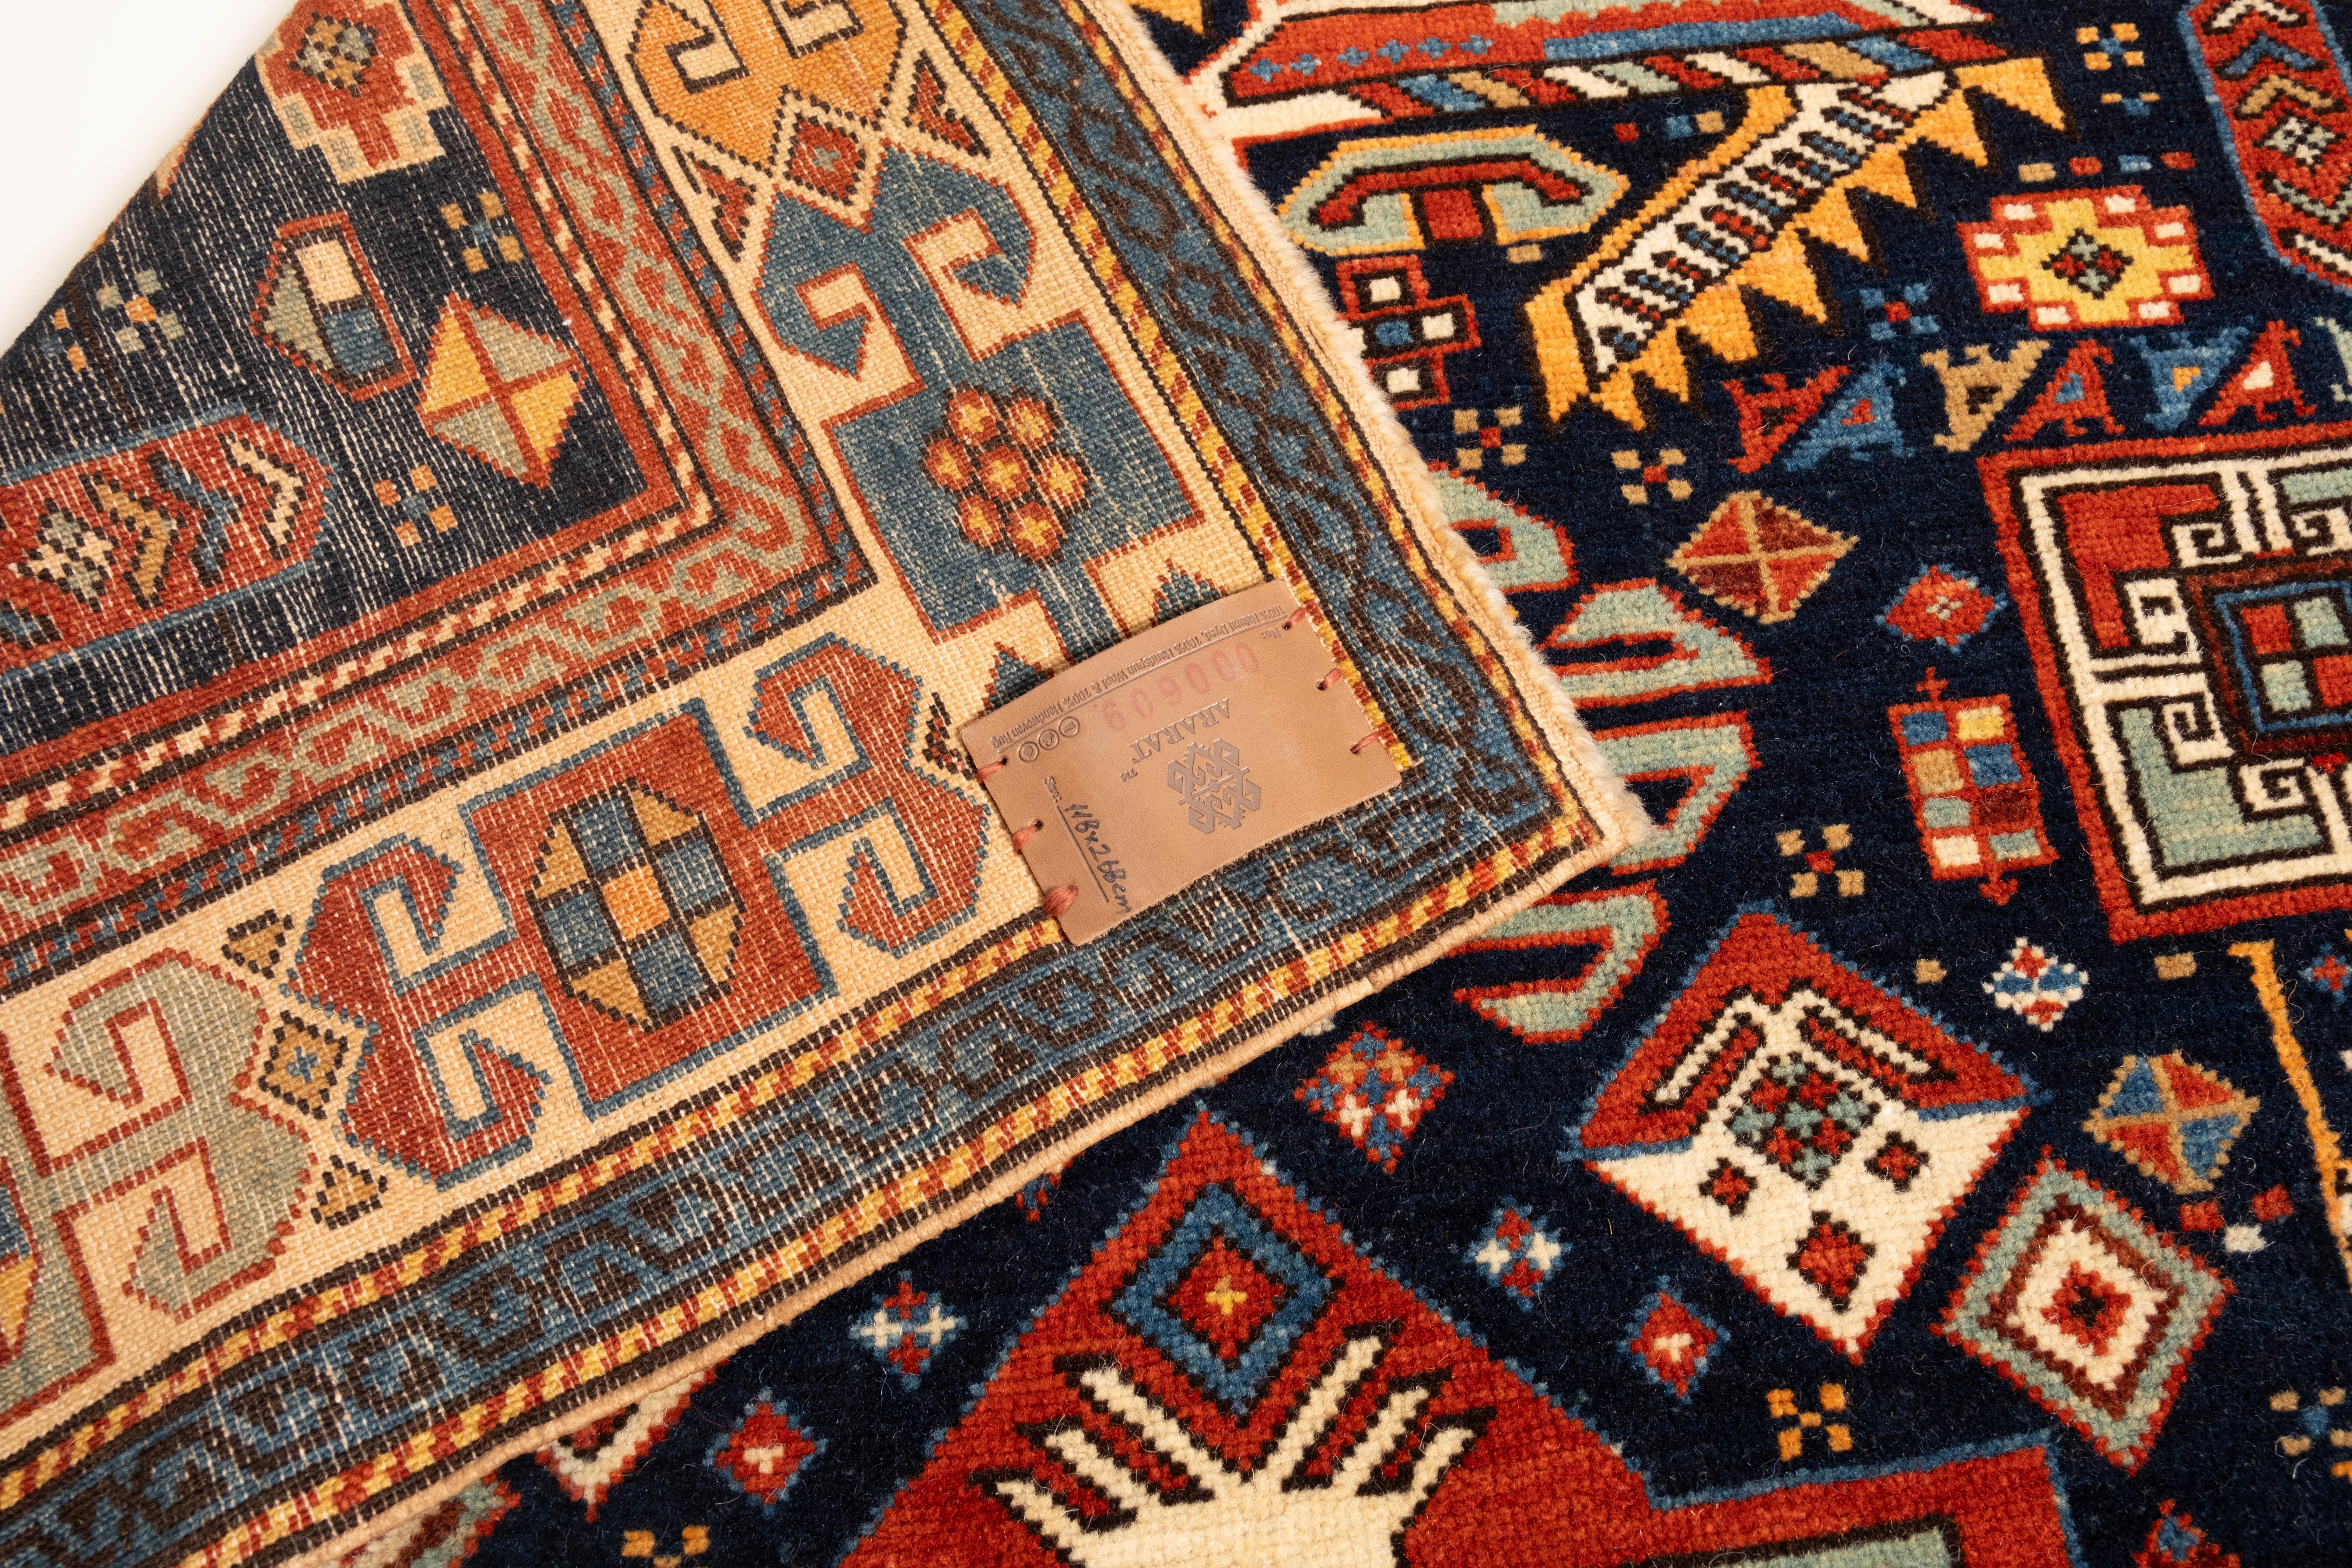 Wool Ararat Rugs Akstafa Kazak Rug, 19th C. Caucasian Revival Carpet Natural Dyed For Sale